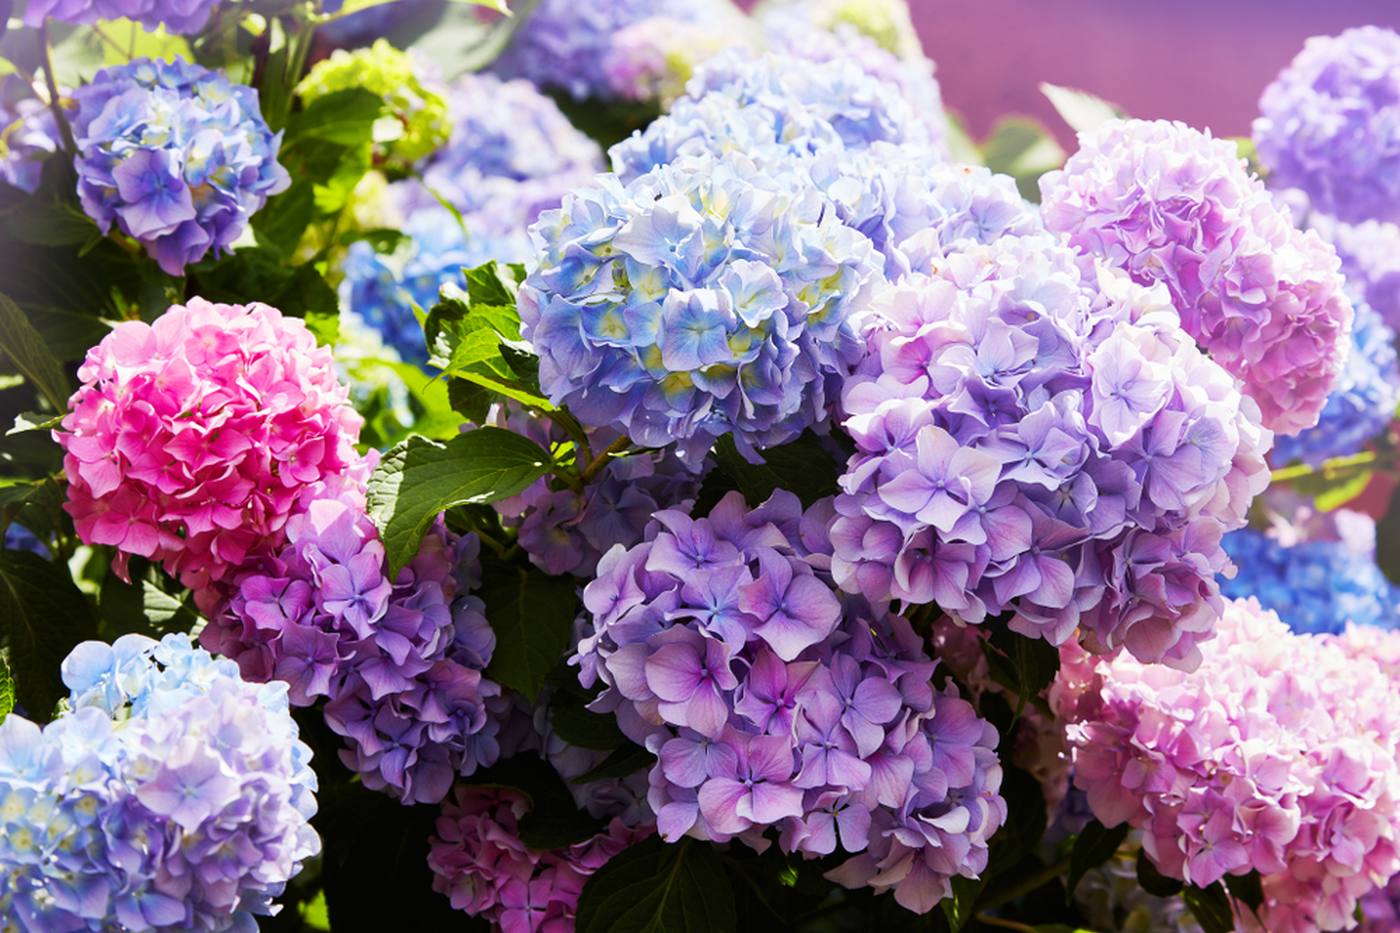 【ガーデニング】梅雨の時期を楽しむ紫陽花の育て方や種類、活用方法をご紹介 image